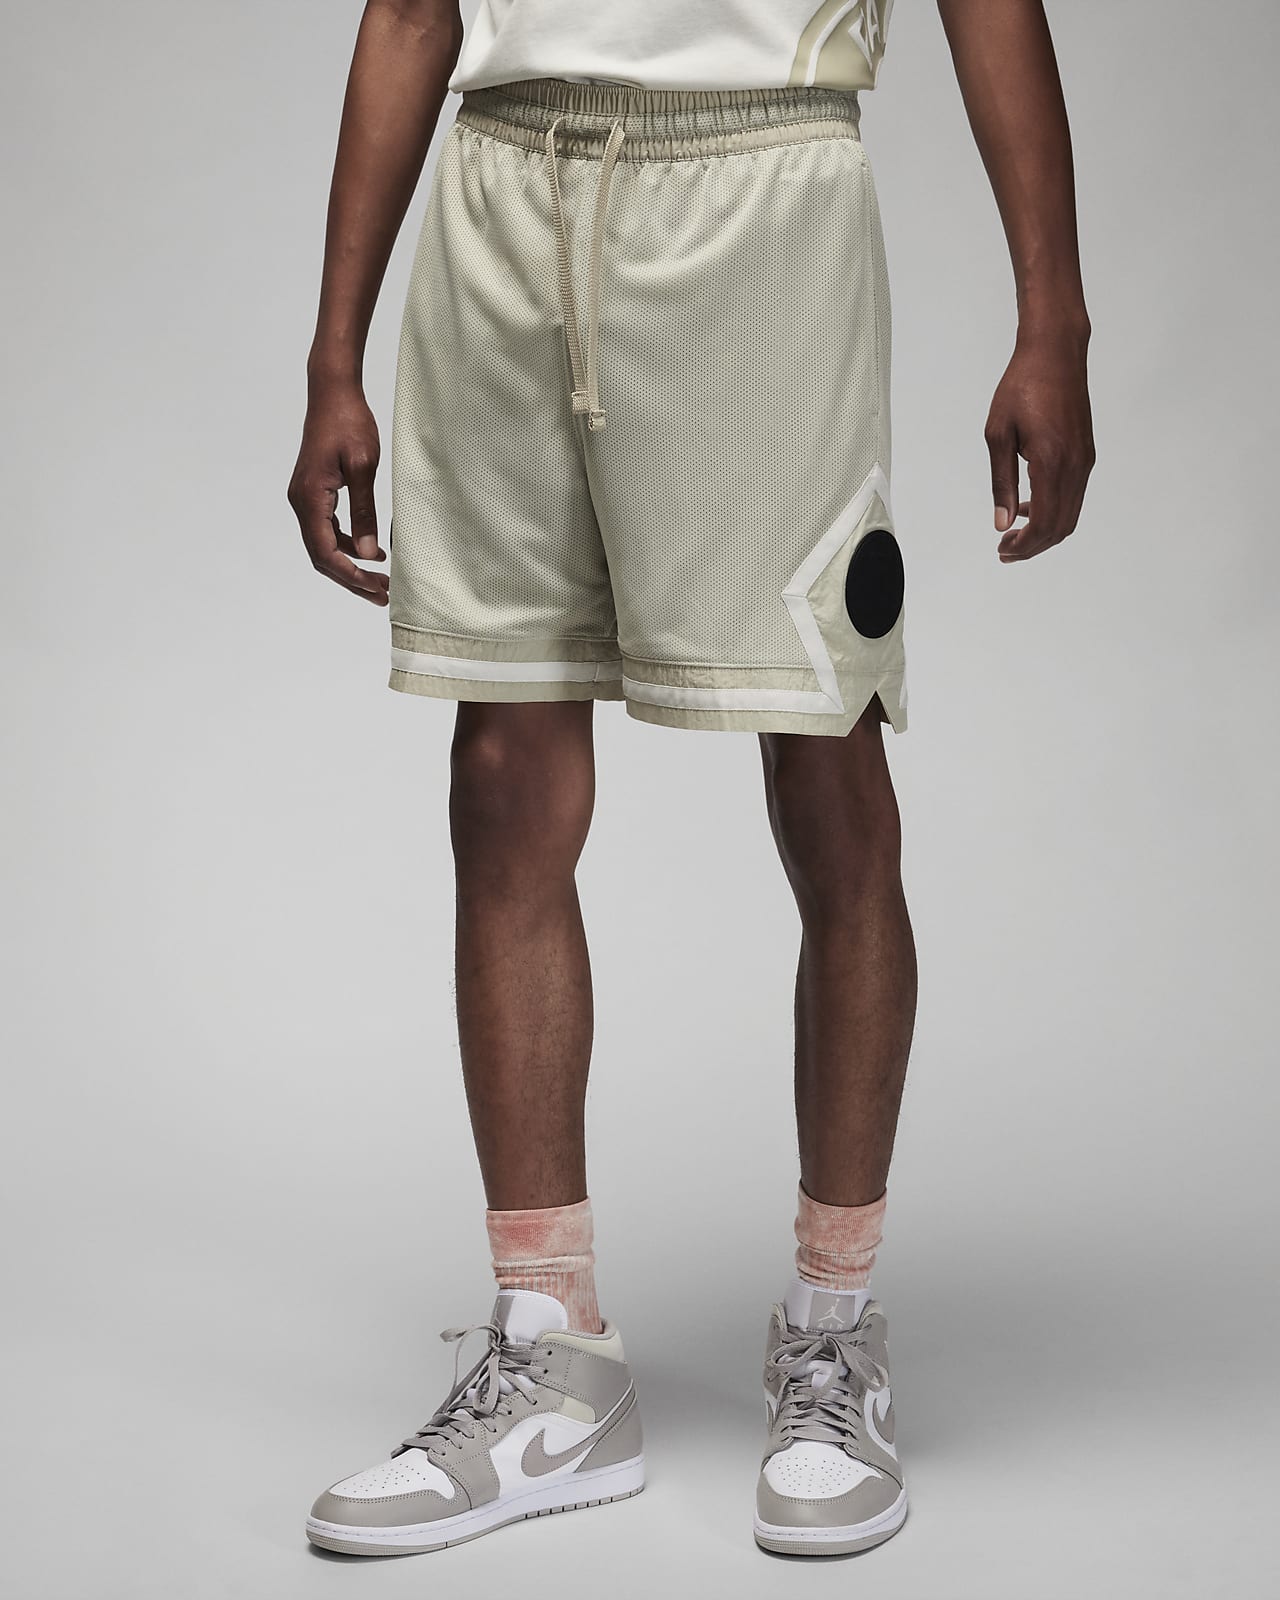 psg basketball shorts